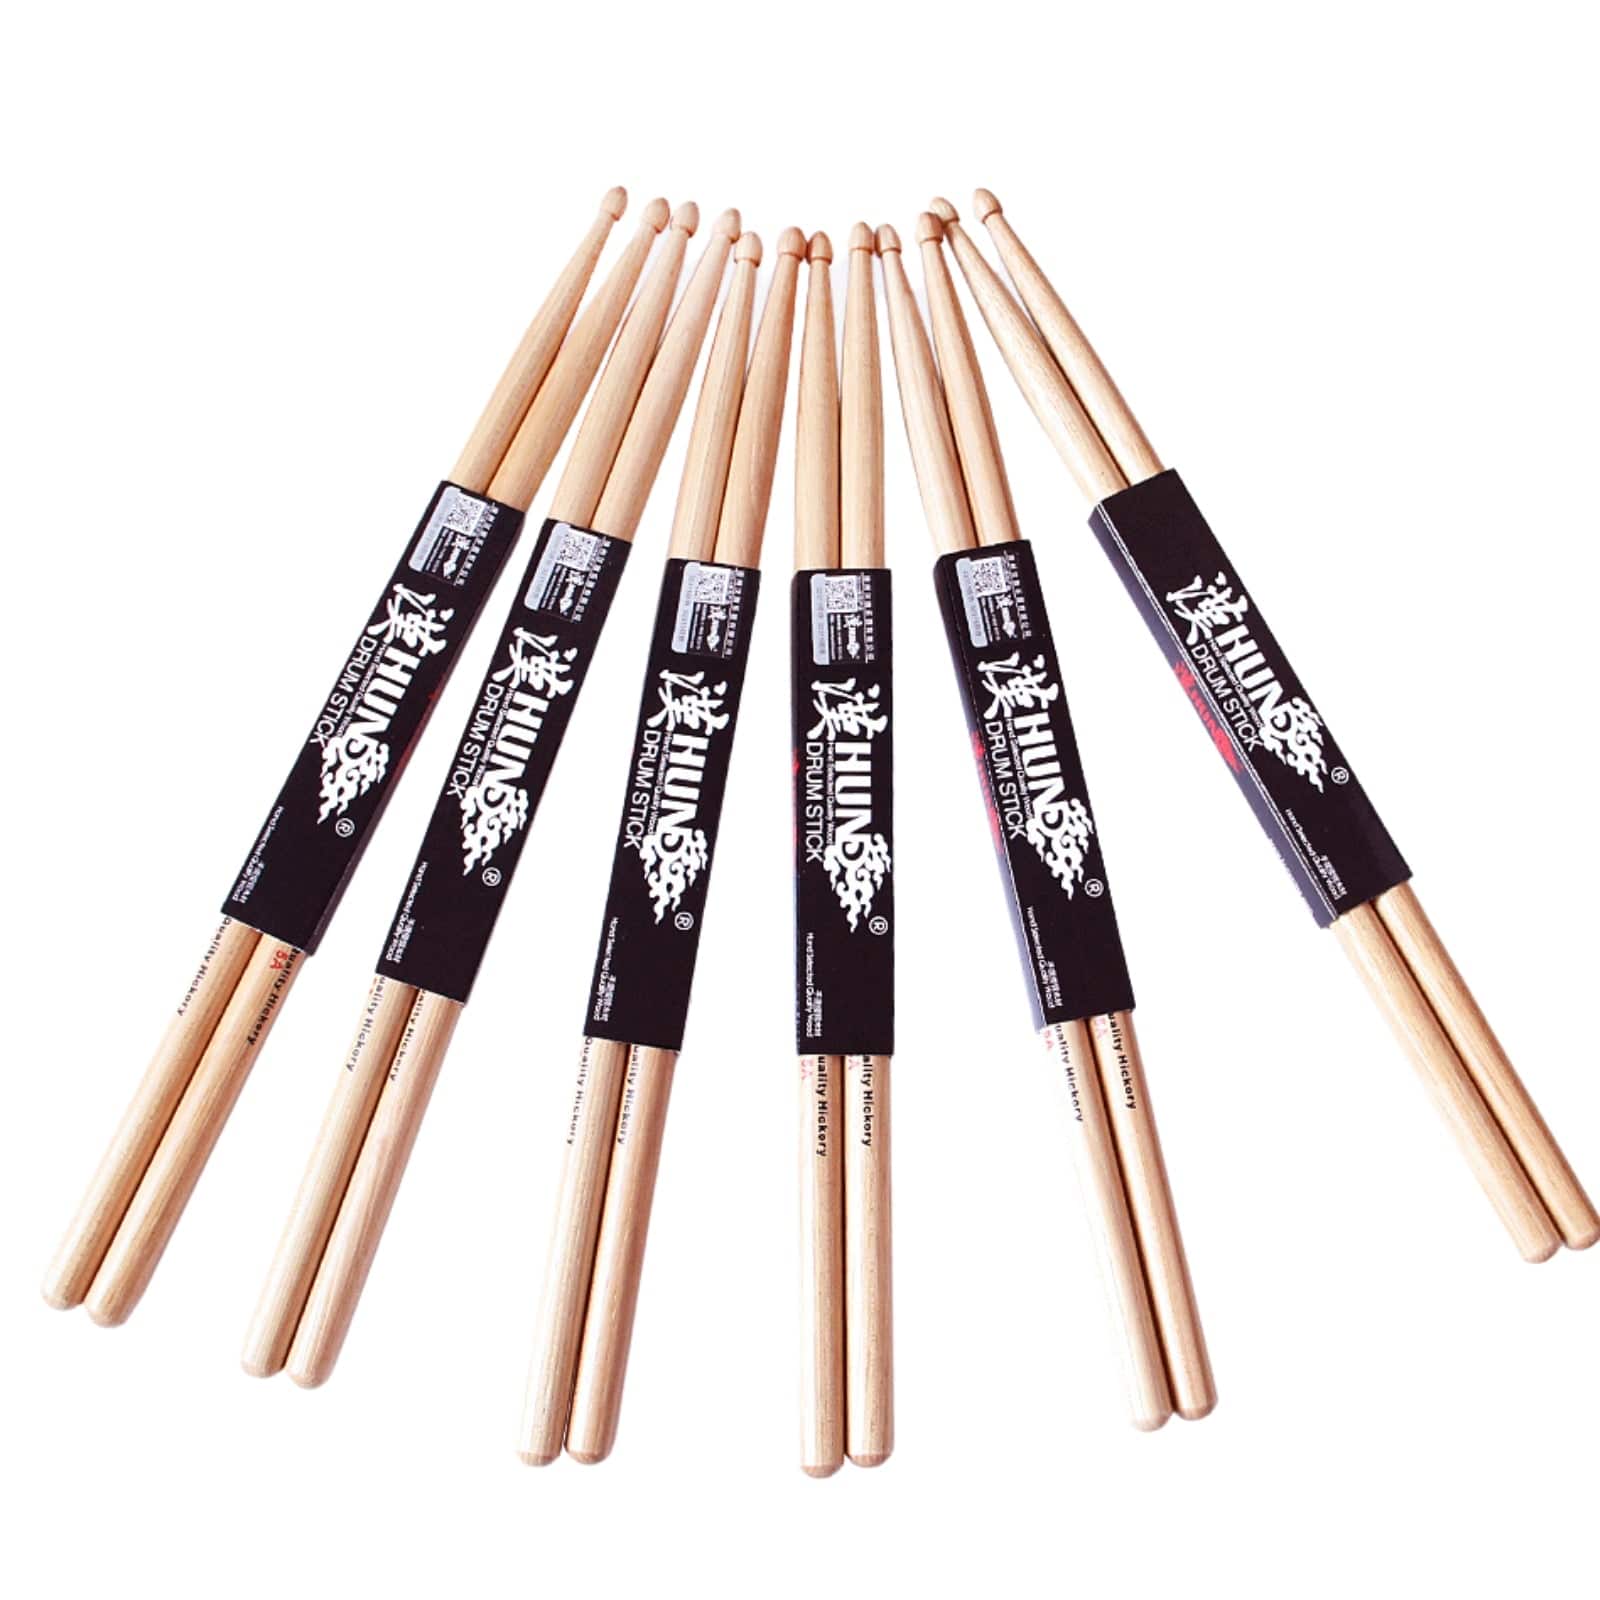 Hanflag 5A Drumsticks Premium Tough Hickory